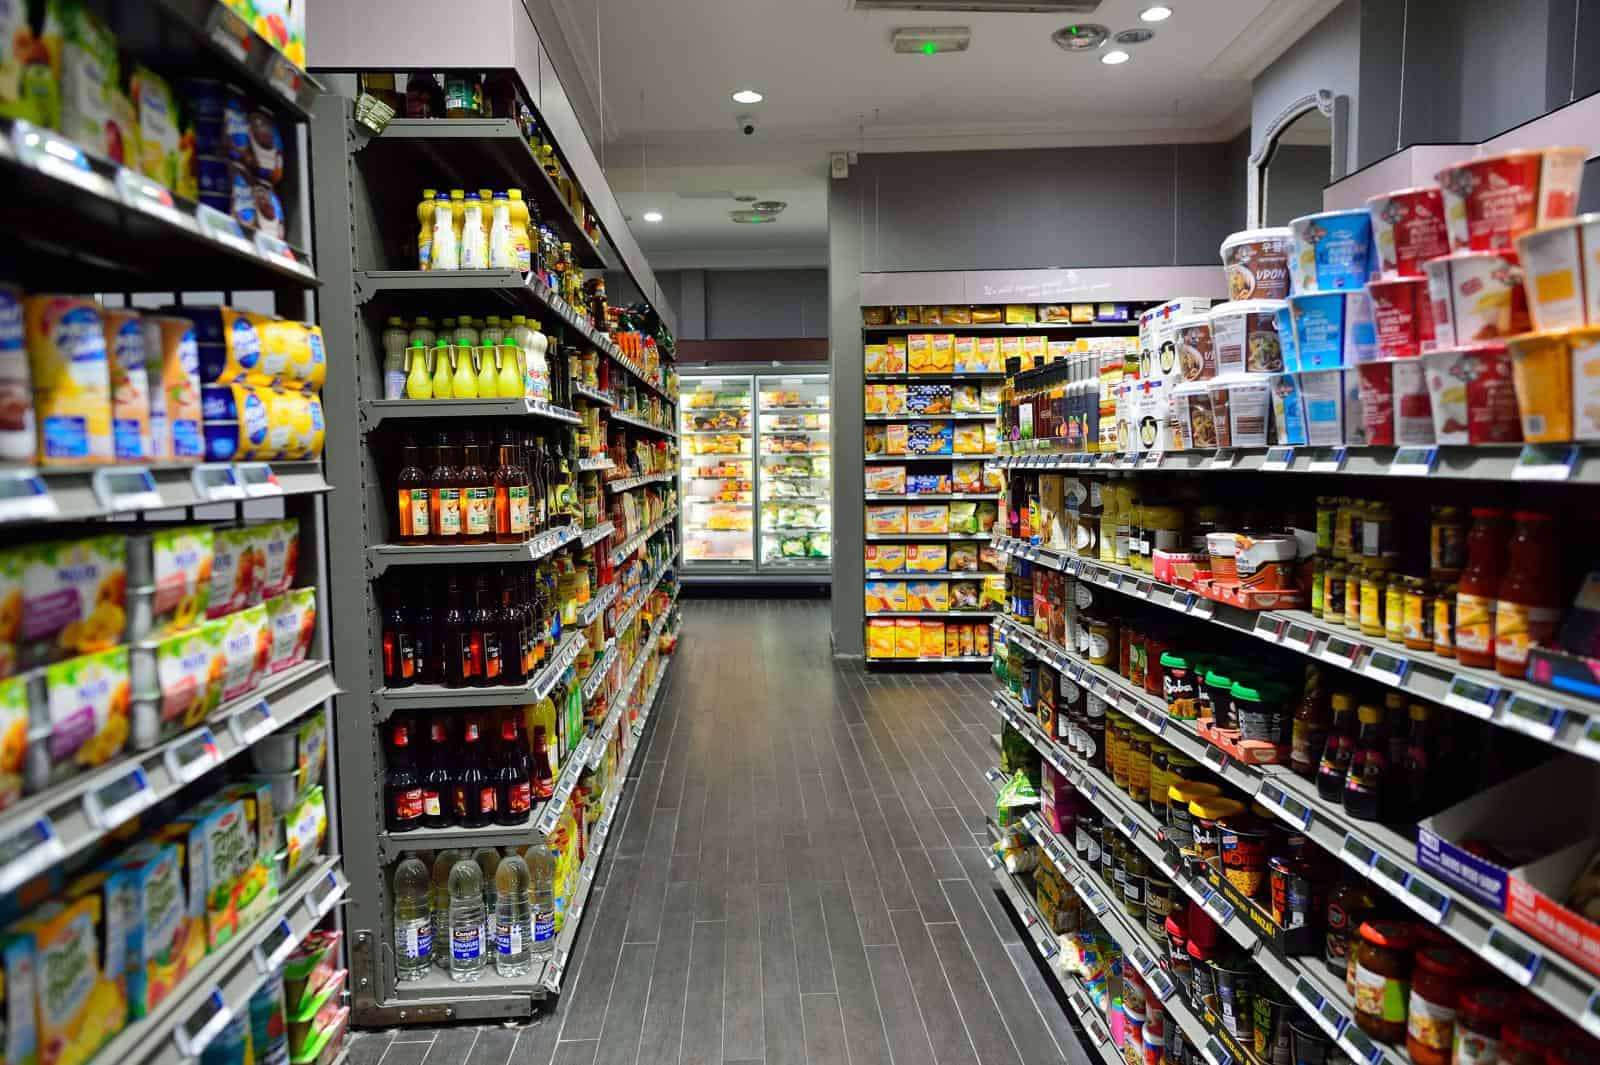 Interior of Supermarket in Paris